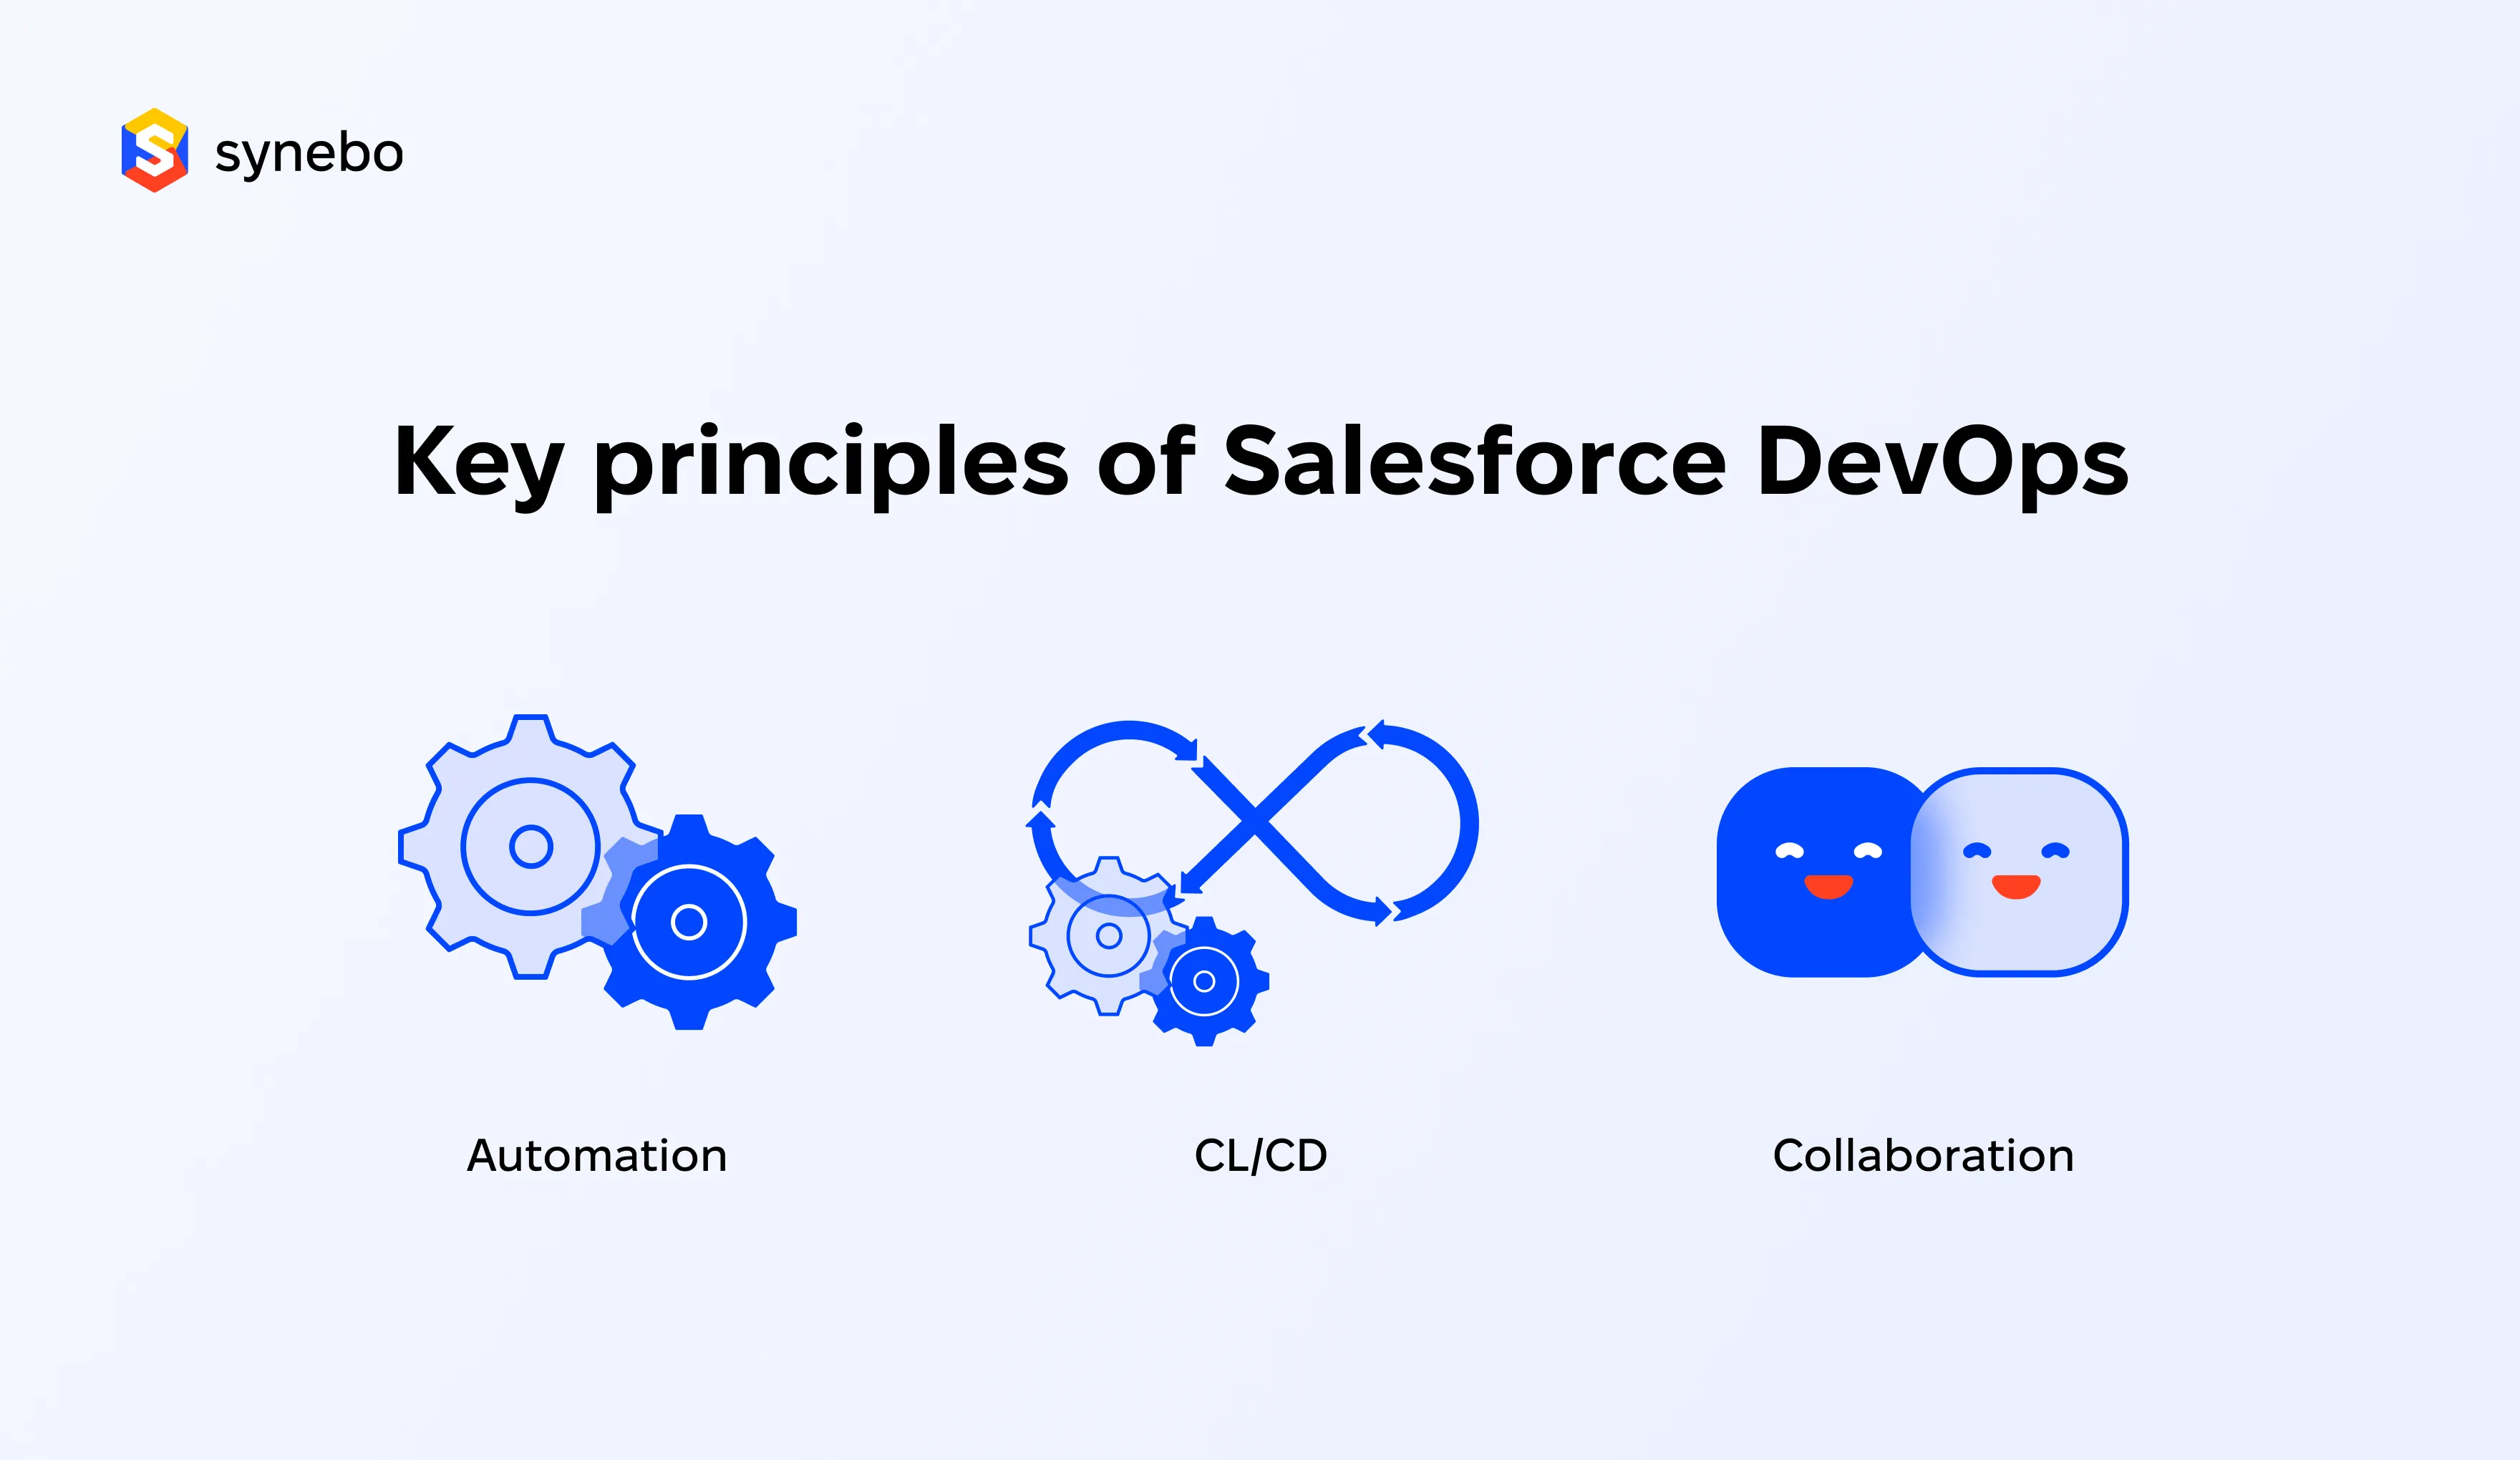 Key principles of Salesforce devops